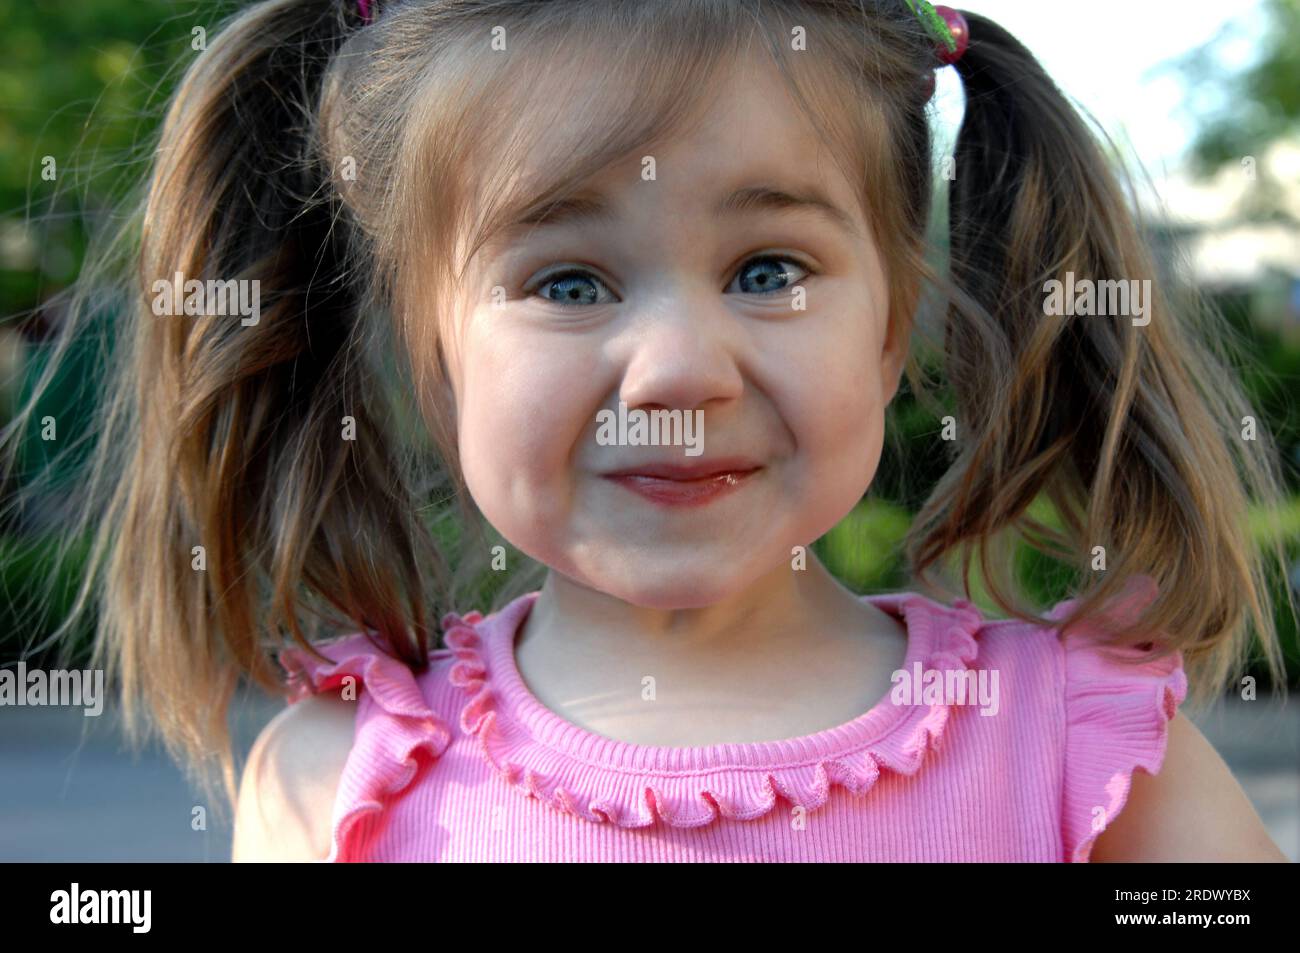 Das kleine Mädchen versucht, ihr Kichern zu halten, während sie ihr Gesicht in ein fröhliches Grinsen versetzt. Sie hat Zöpfe und ein rosa Hemd. Stockfoto